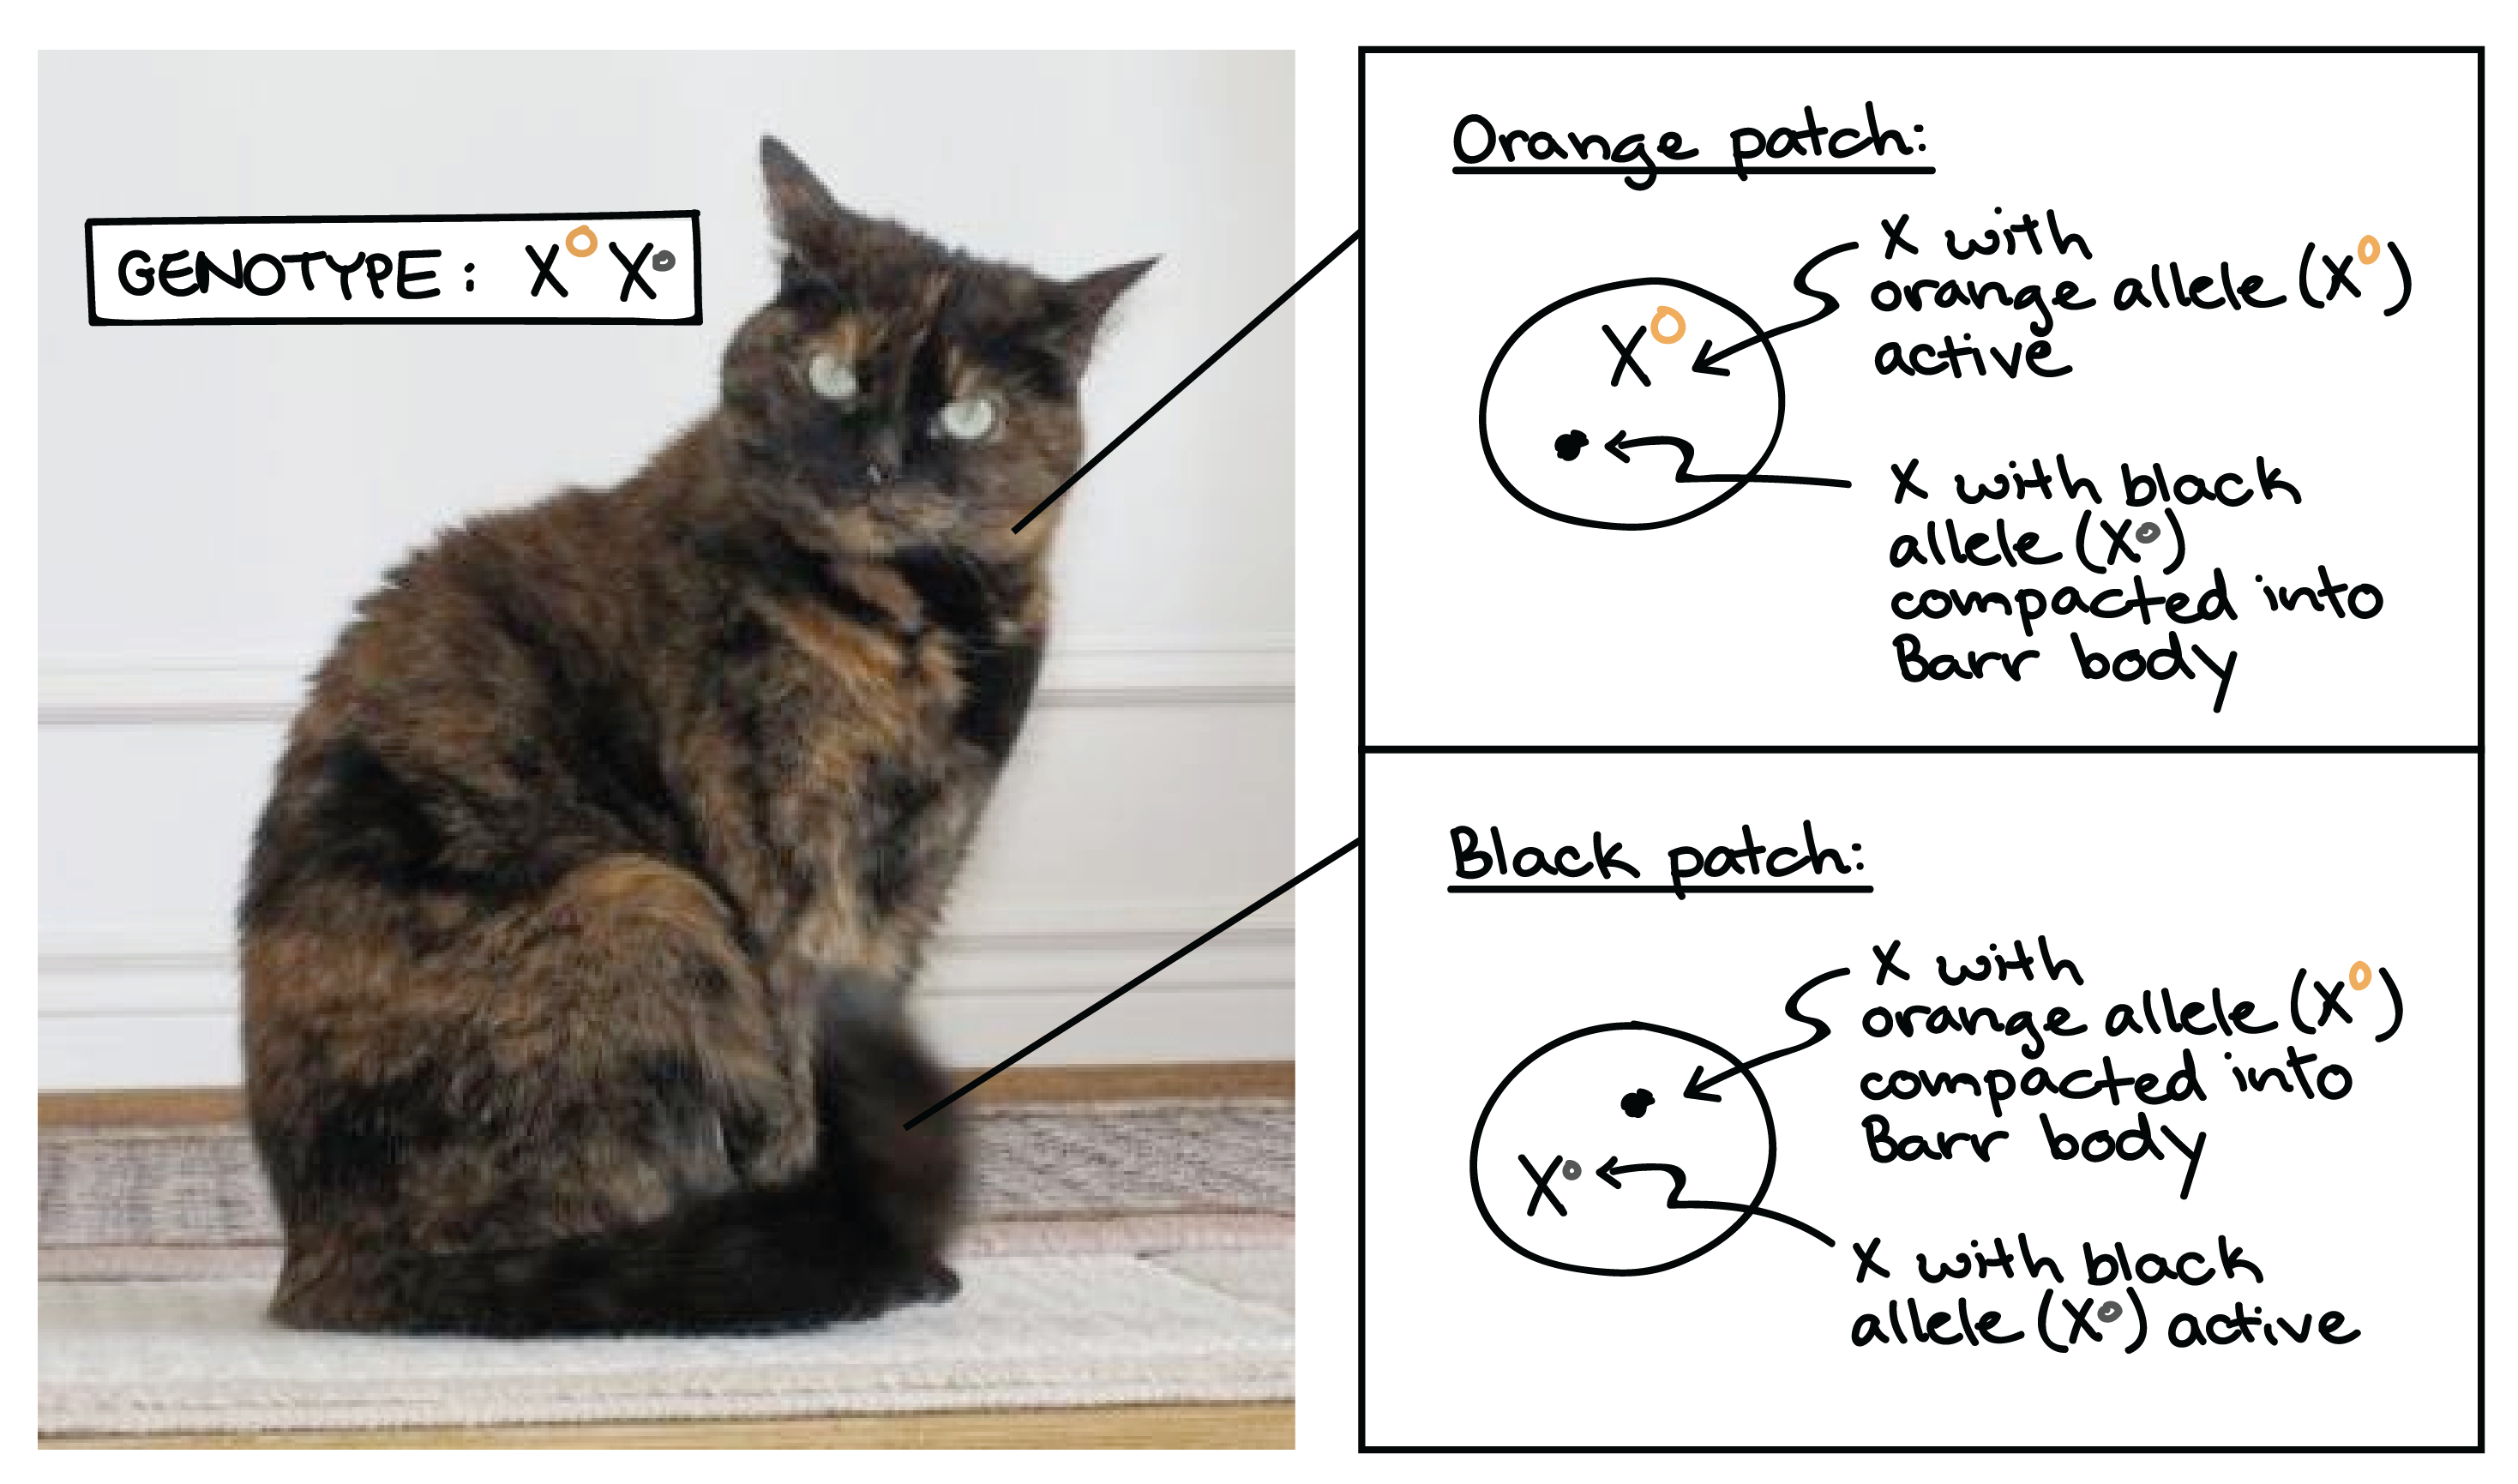 Imagem de um gato malhado, ilustrando o processo de inativação do X que causa as manchas de diferentes cores na sua pelugem. O gato tem uma mistura de manchas pretas e laranjas, algumas menores e outras maiores. O genótipo do gato é $\text X^O\text X^o$, onde o _O_ grande representa o laranja e o _o_ pequeno representa o preto.

* As manchas laranjas são formadas por células que possuem o X com o alelo laranja ($\text X^O$) ativo, enquanto o X com o alelo preto ($\text X^o$) está condensado como corpúsculo de Barr.

* As manchas pretas são formadas por células que possuem o X com o alelo preto ($\text X^O$) ativo, enquanto o X com o alelo laranja ($\text X^o$) está condensado como corpúsculo de Barr.